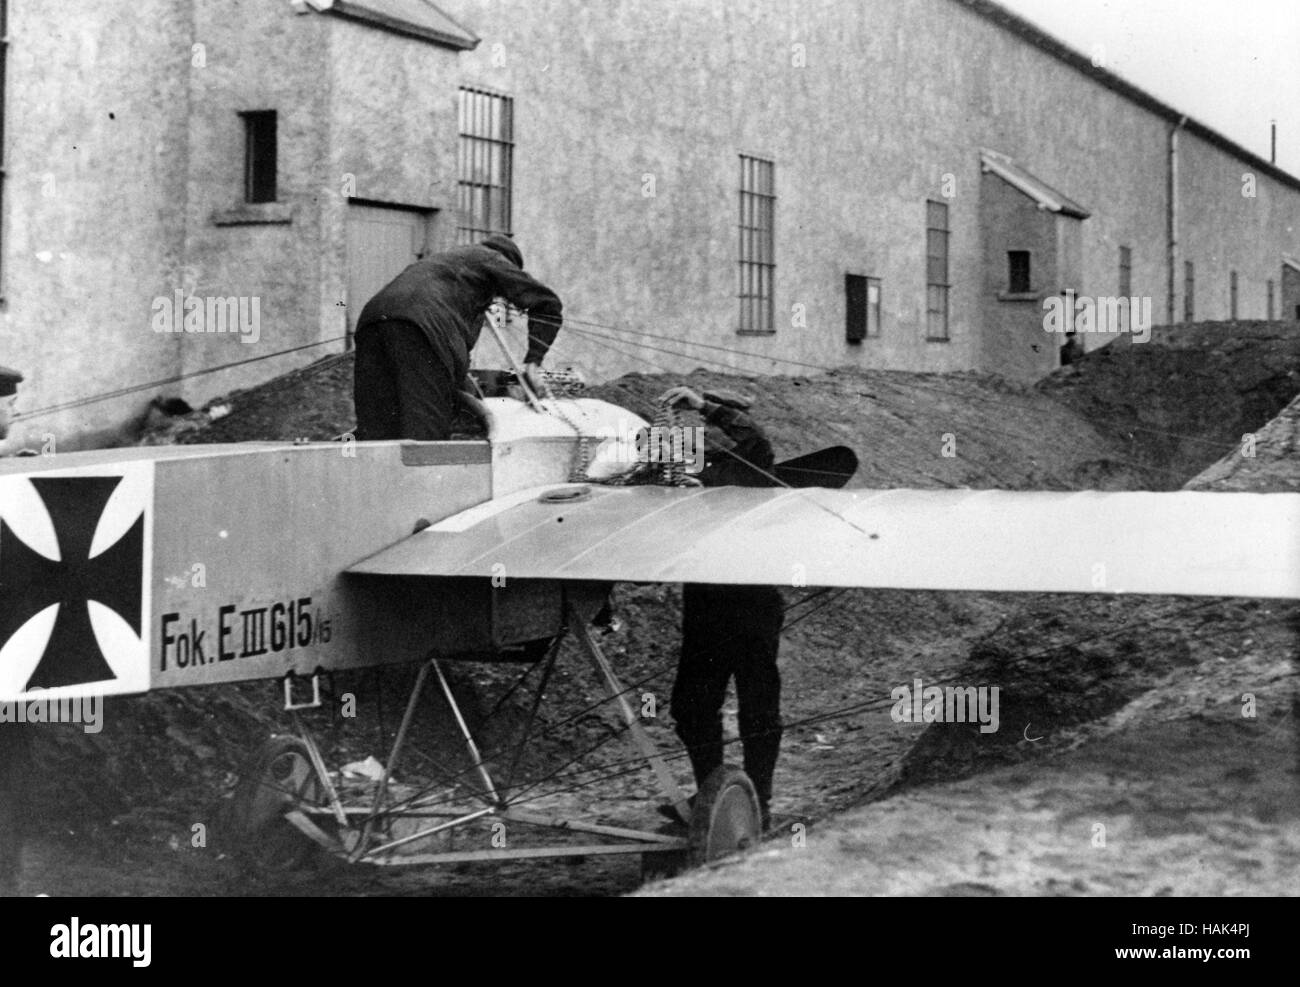 WW1 deutscher Mechaniker Vorbereitung der Spandau-Maschinengewehr auf einer Fokker E.III wahrscheinlich Anfang 1916 zu testen, wie der Insignia Kreuz zeigt. Lage unbekannt Stockfoto